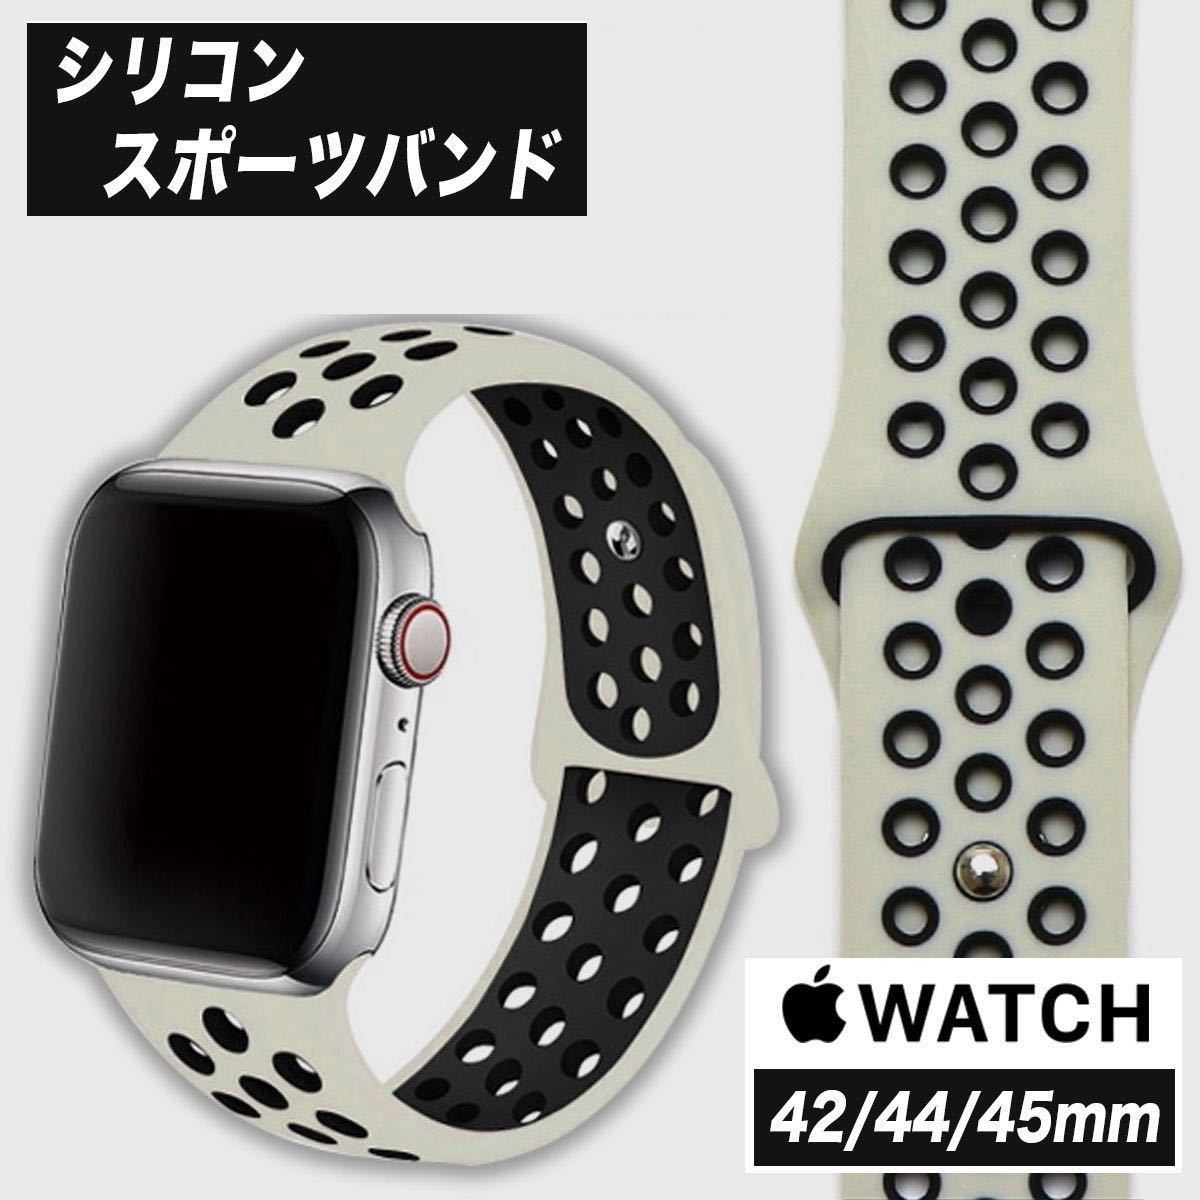 アップルウォッチ Apple Watch スポーツバンド 42mm 44mm 45mm 49mm サンド ブラック ラバー シリコン ベルト メンズ 男性 運動 Nikeタイプ_画像1